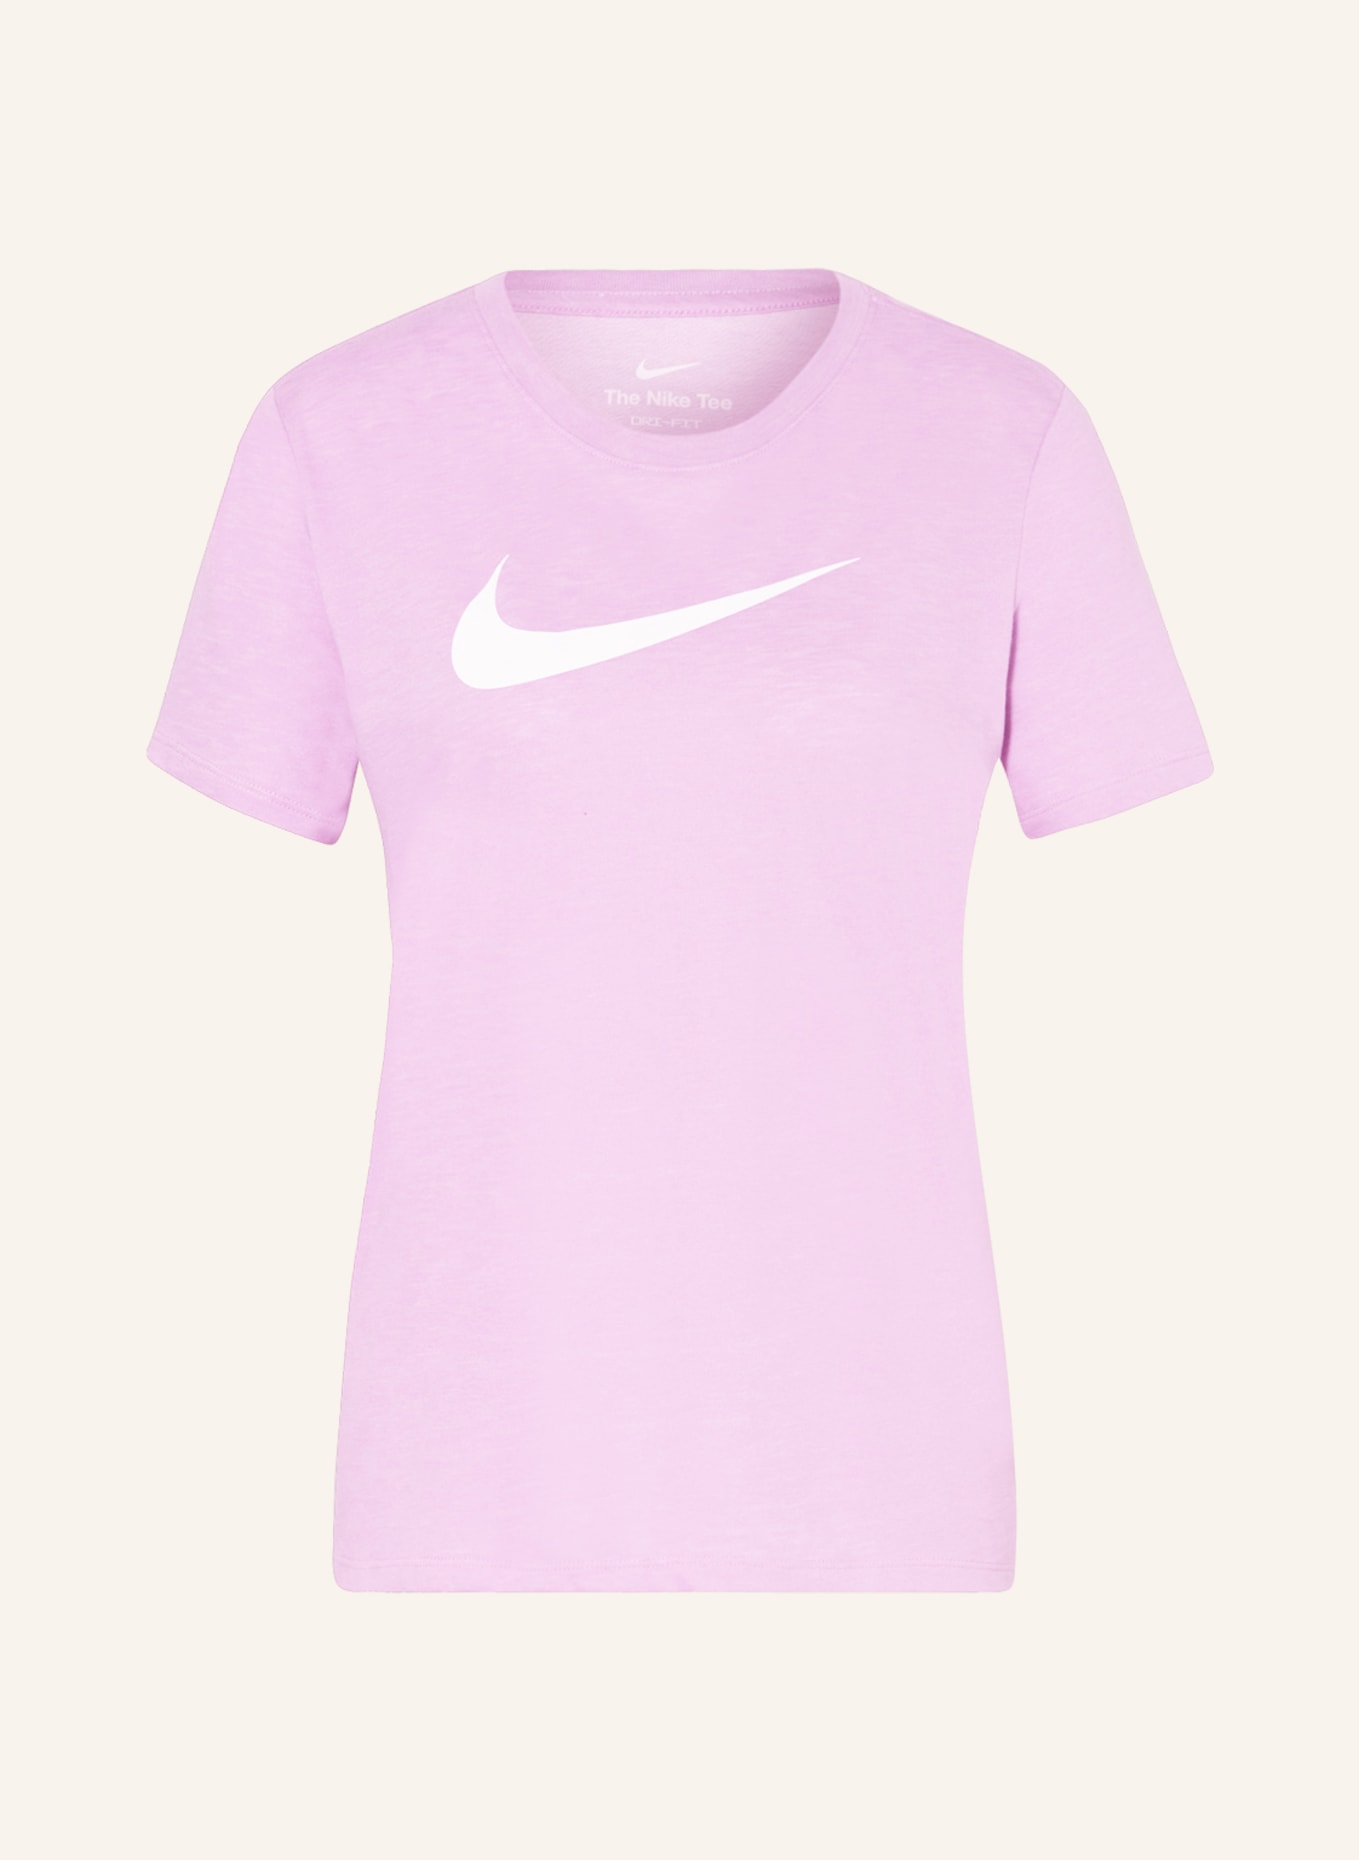 Nike T-shirt DRI-FIT SWOOSH, Color: LIGHT PURPLE (Image 1)